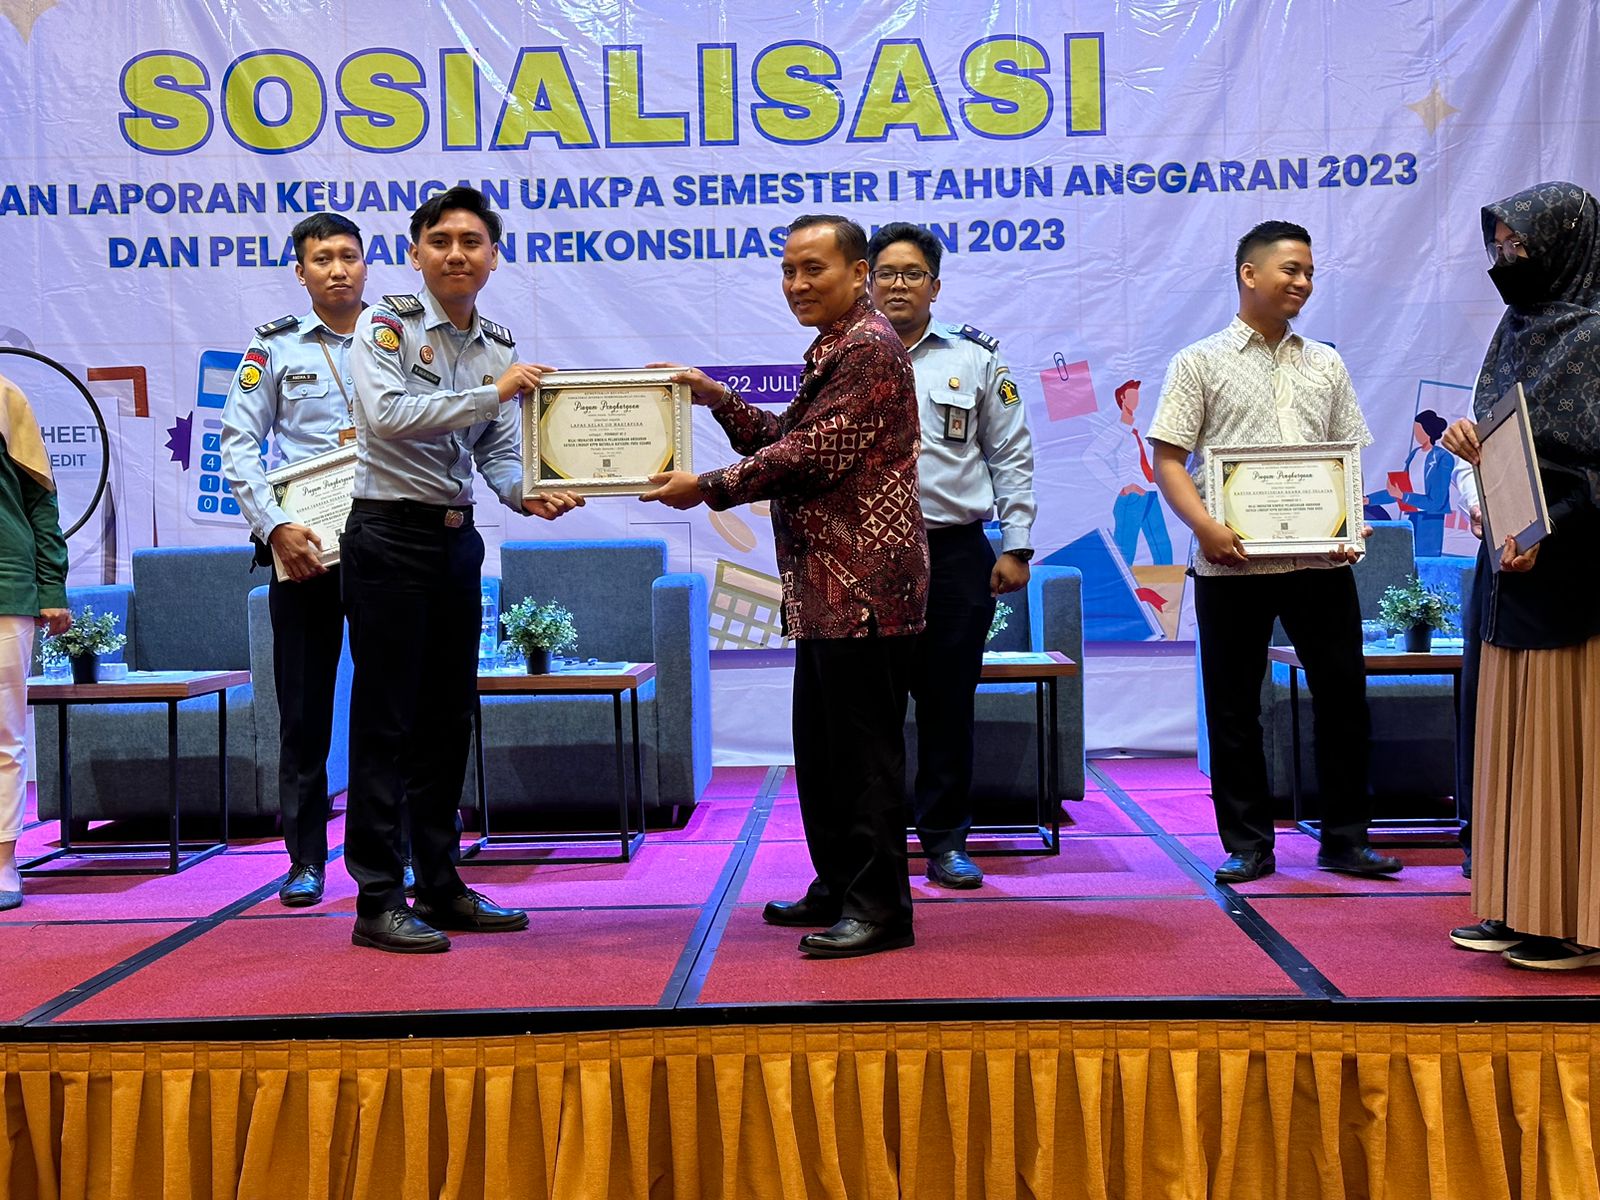 Selamat, Lapas Martapura Raih Penghargaan Terbaik II Kinerja Pelaksanaan Anggaran Semester I Tahun 2023 